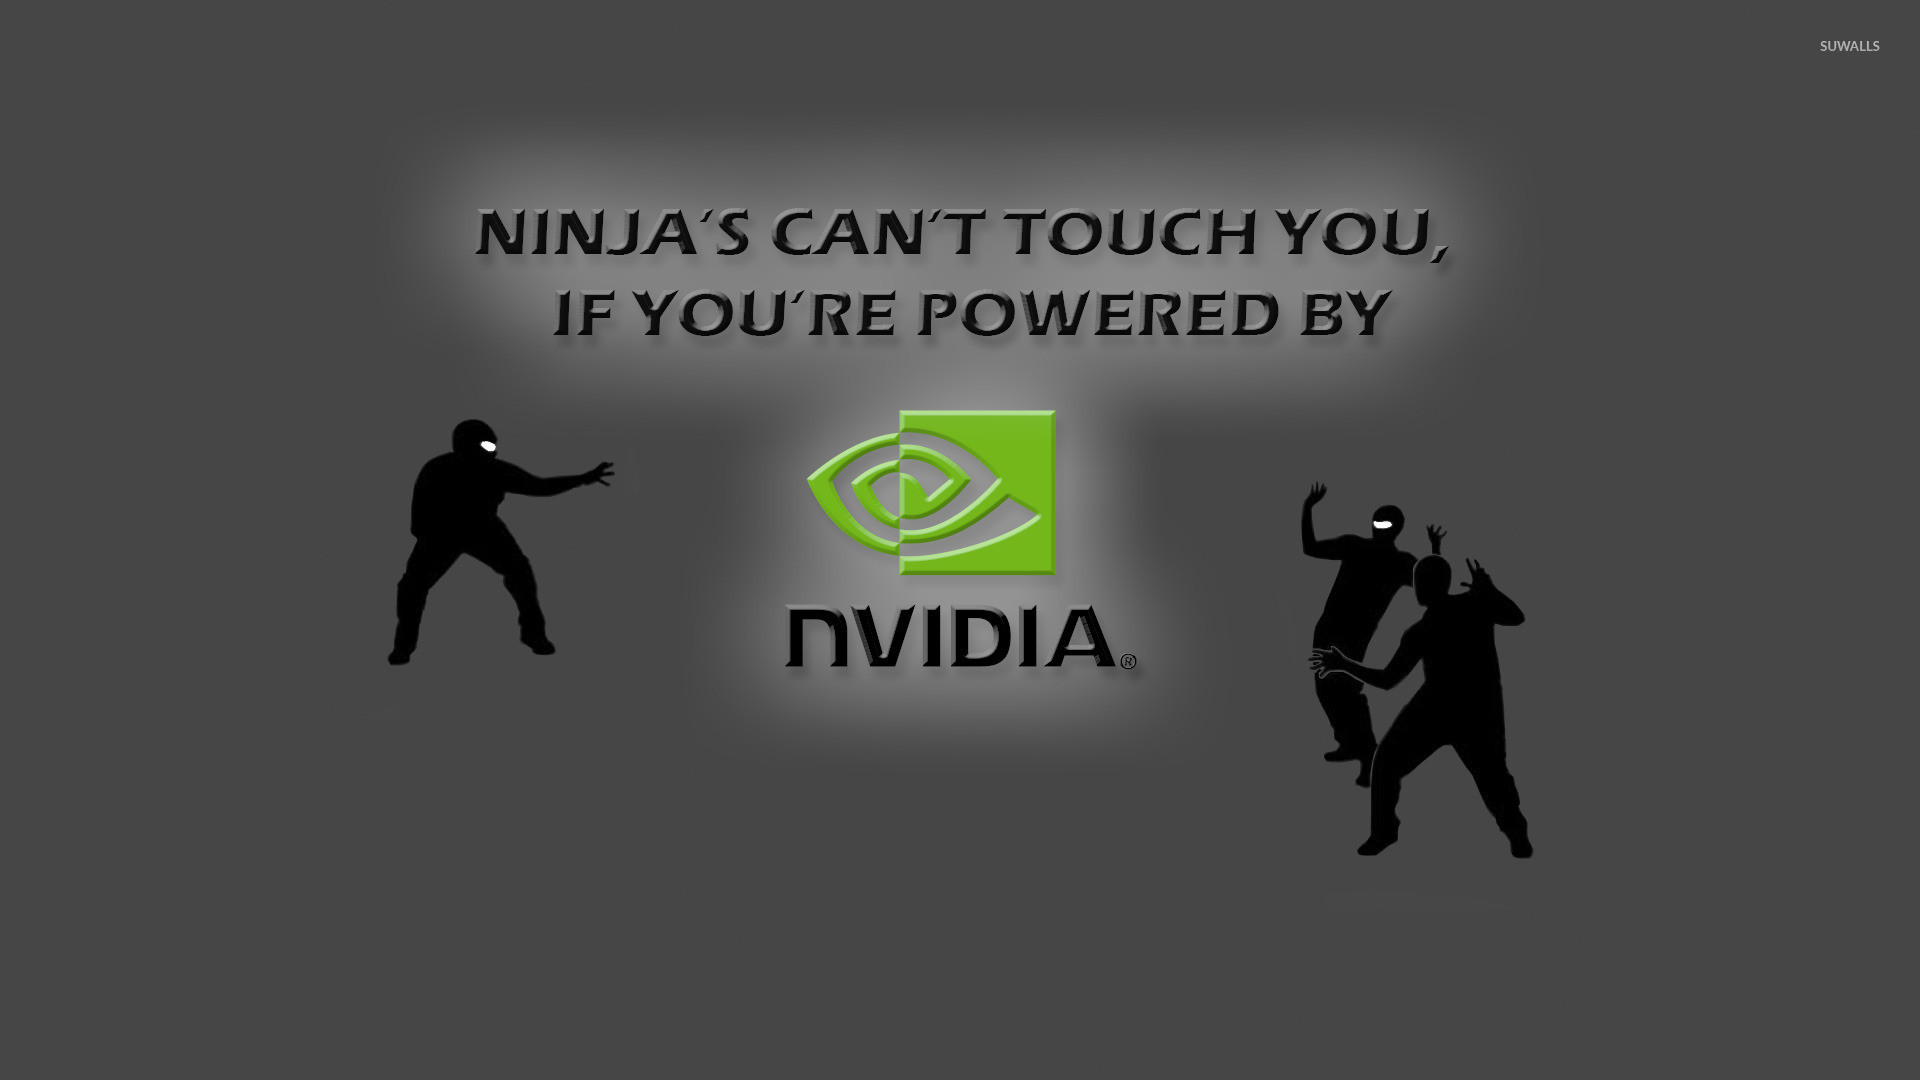 Ninjas vs Nvidia wallpaper jpg